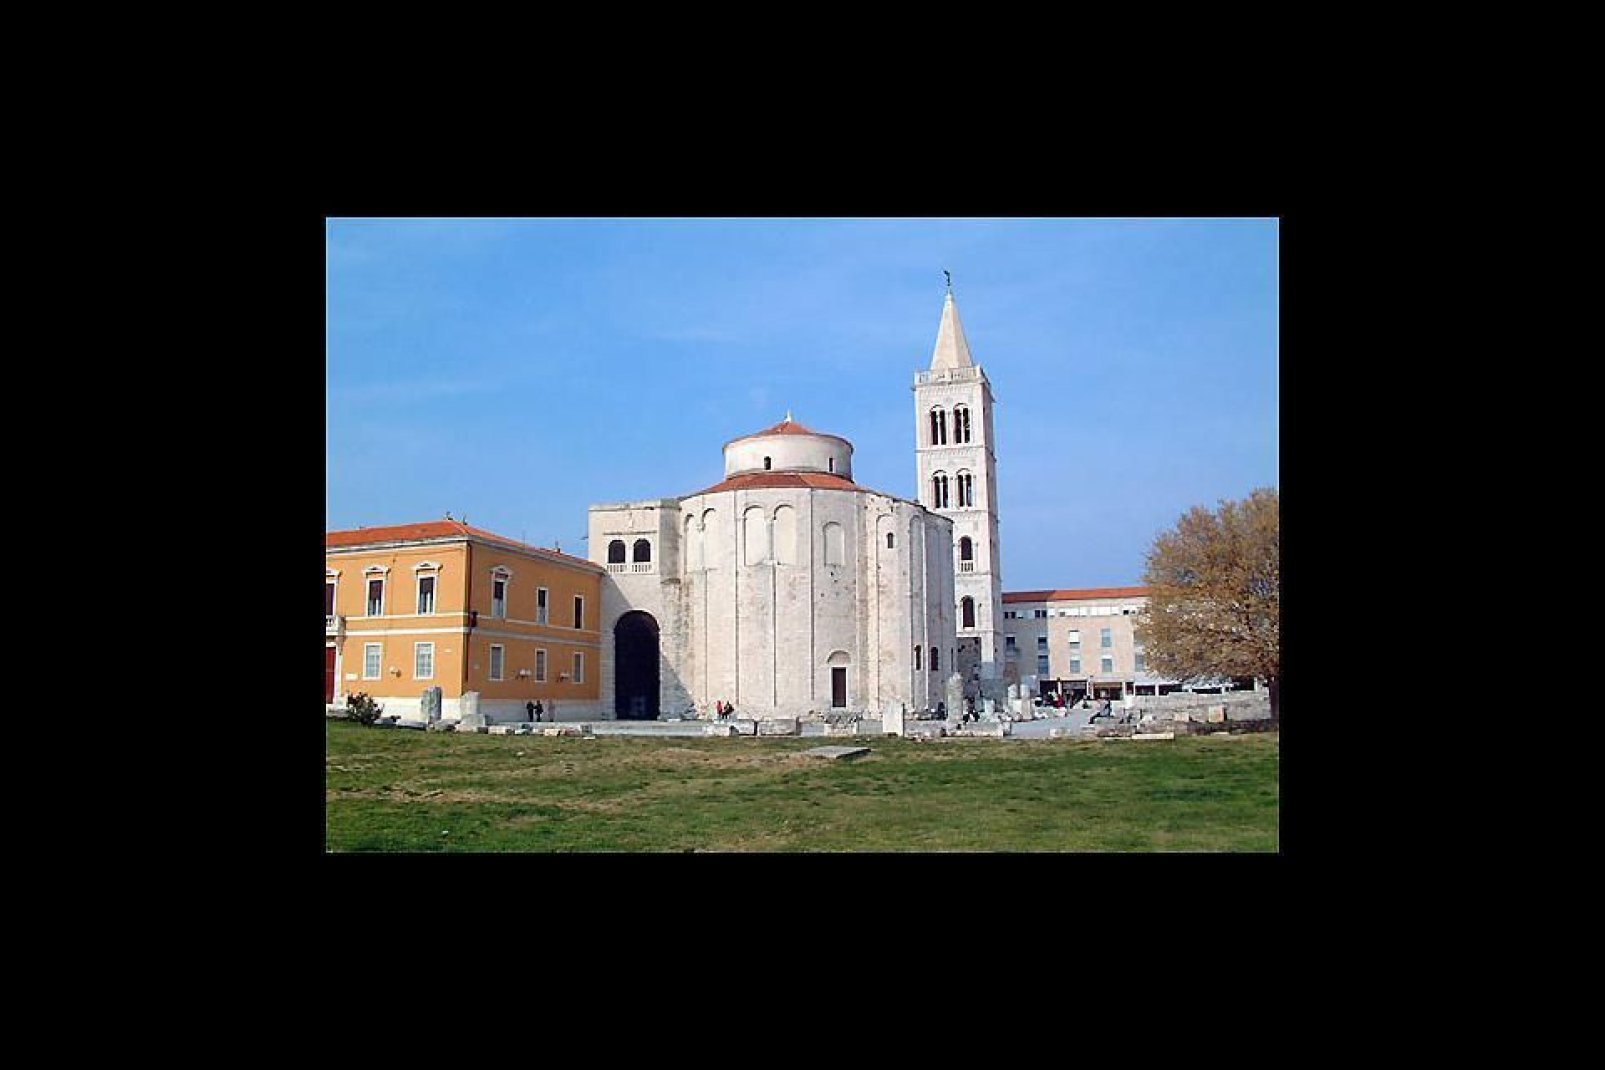 L'antica città di Zadar possiede edifici storici dall'architettura magnifica, come la chiesa San Donat, che risale al IX secolo.